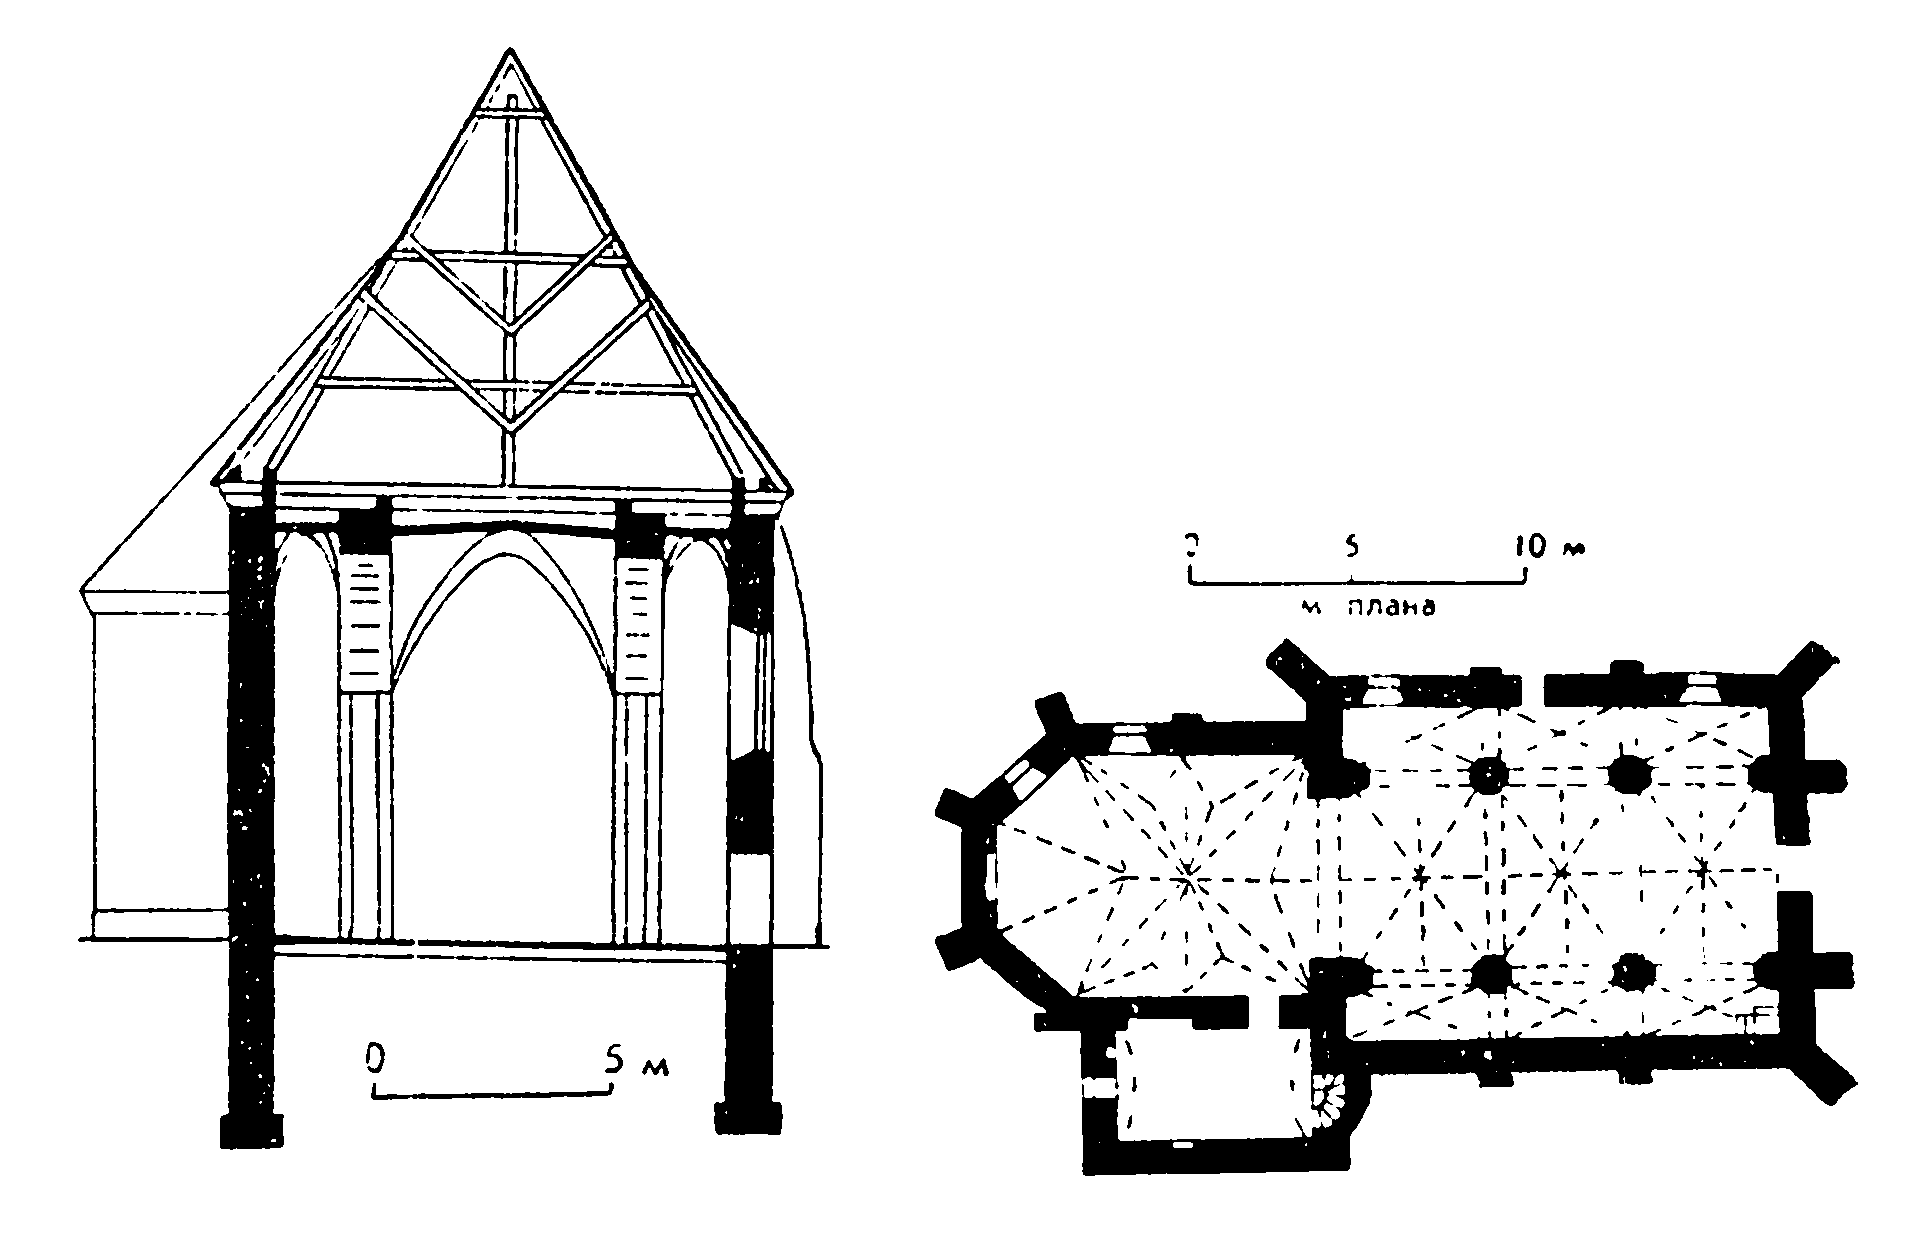 15. Ишколдзь. Приходский костел, 1472 г. (штукатурка поздняя)